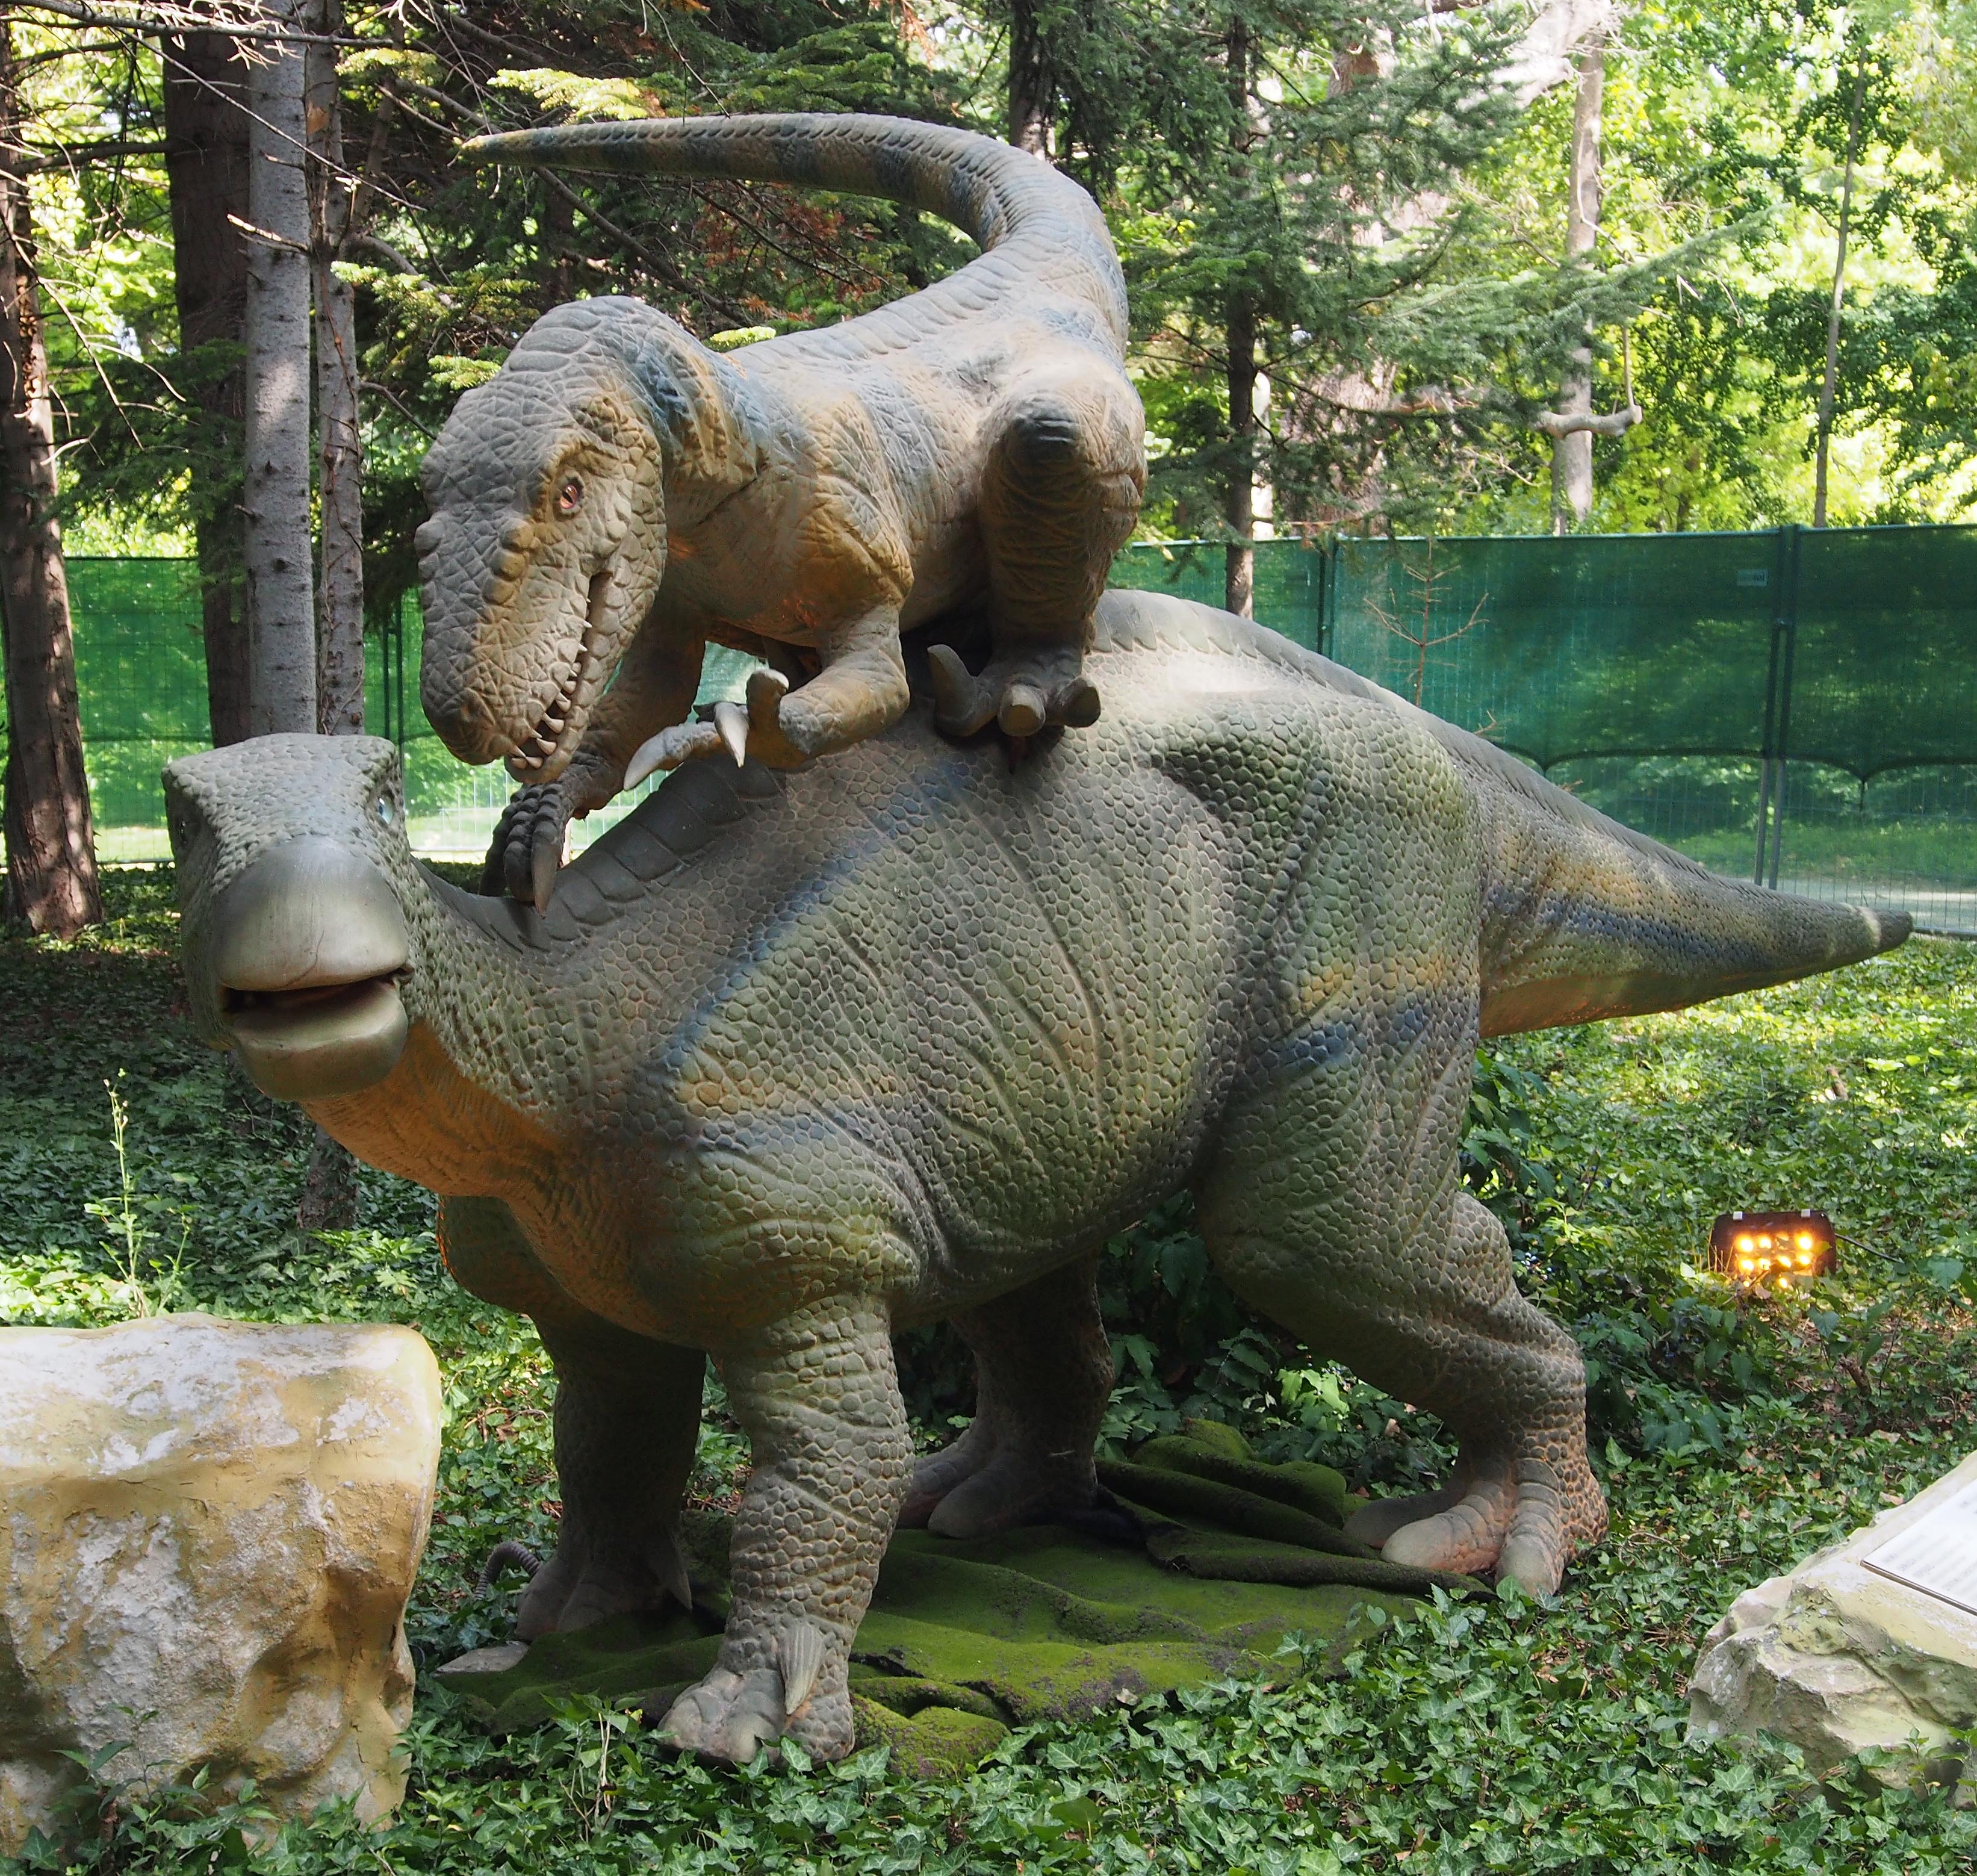 Една от най-атрактивни изложби в света „Живите динозаври“ отвари врати във Варна. Гигантските реалистични копия на праисторическите животни са разположени под Пантеона в Морската градина.